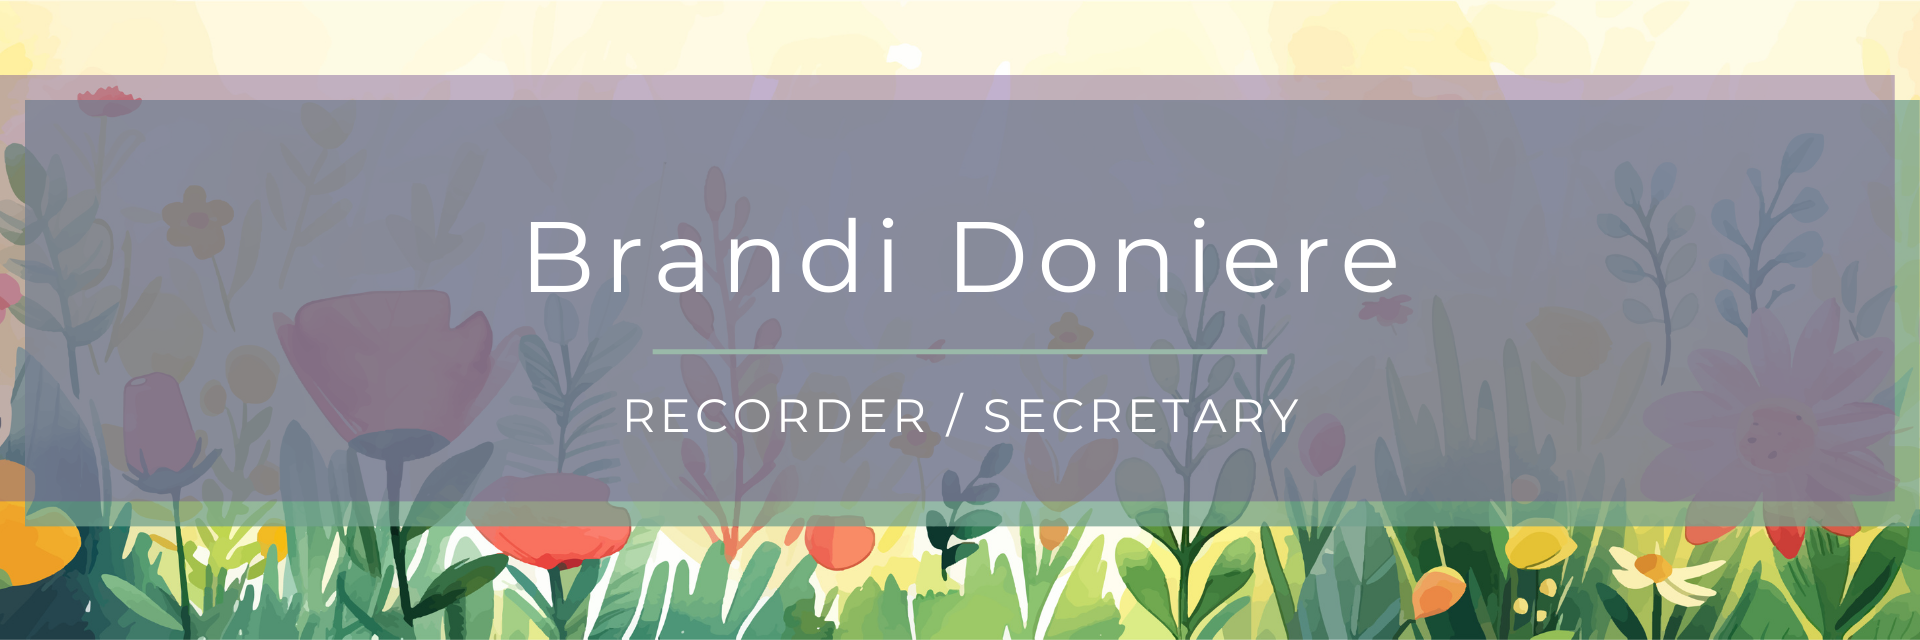 Brandi Doniere Recorder/Secretary